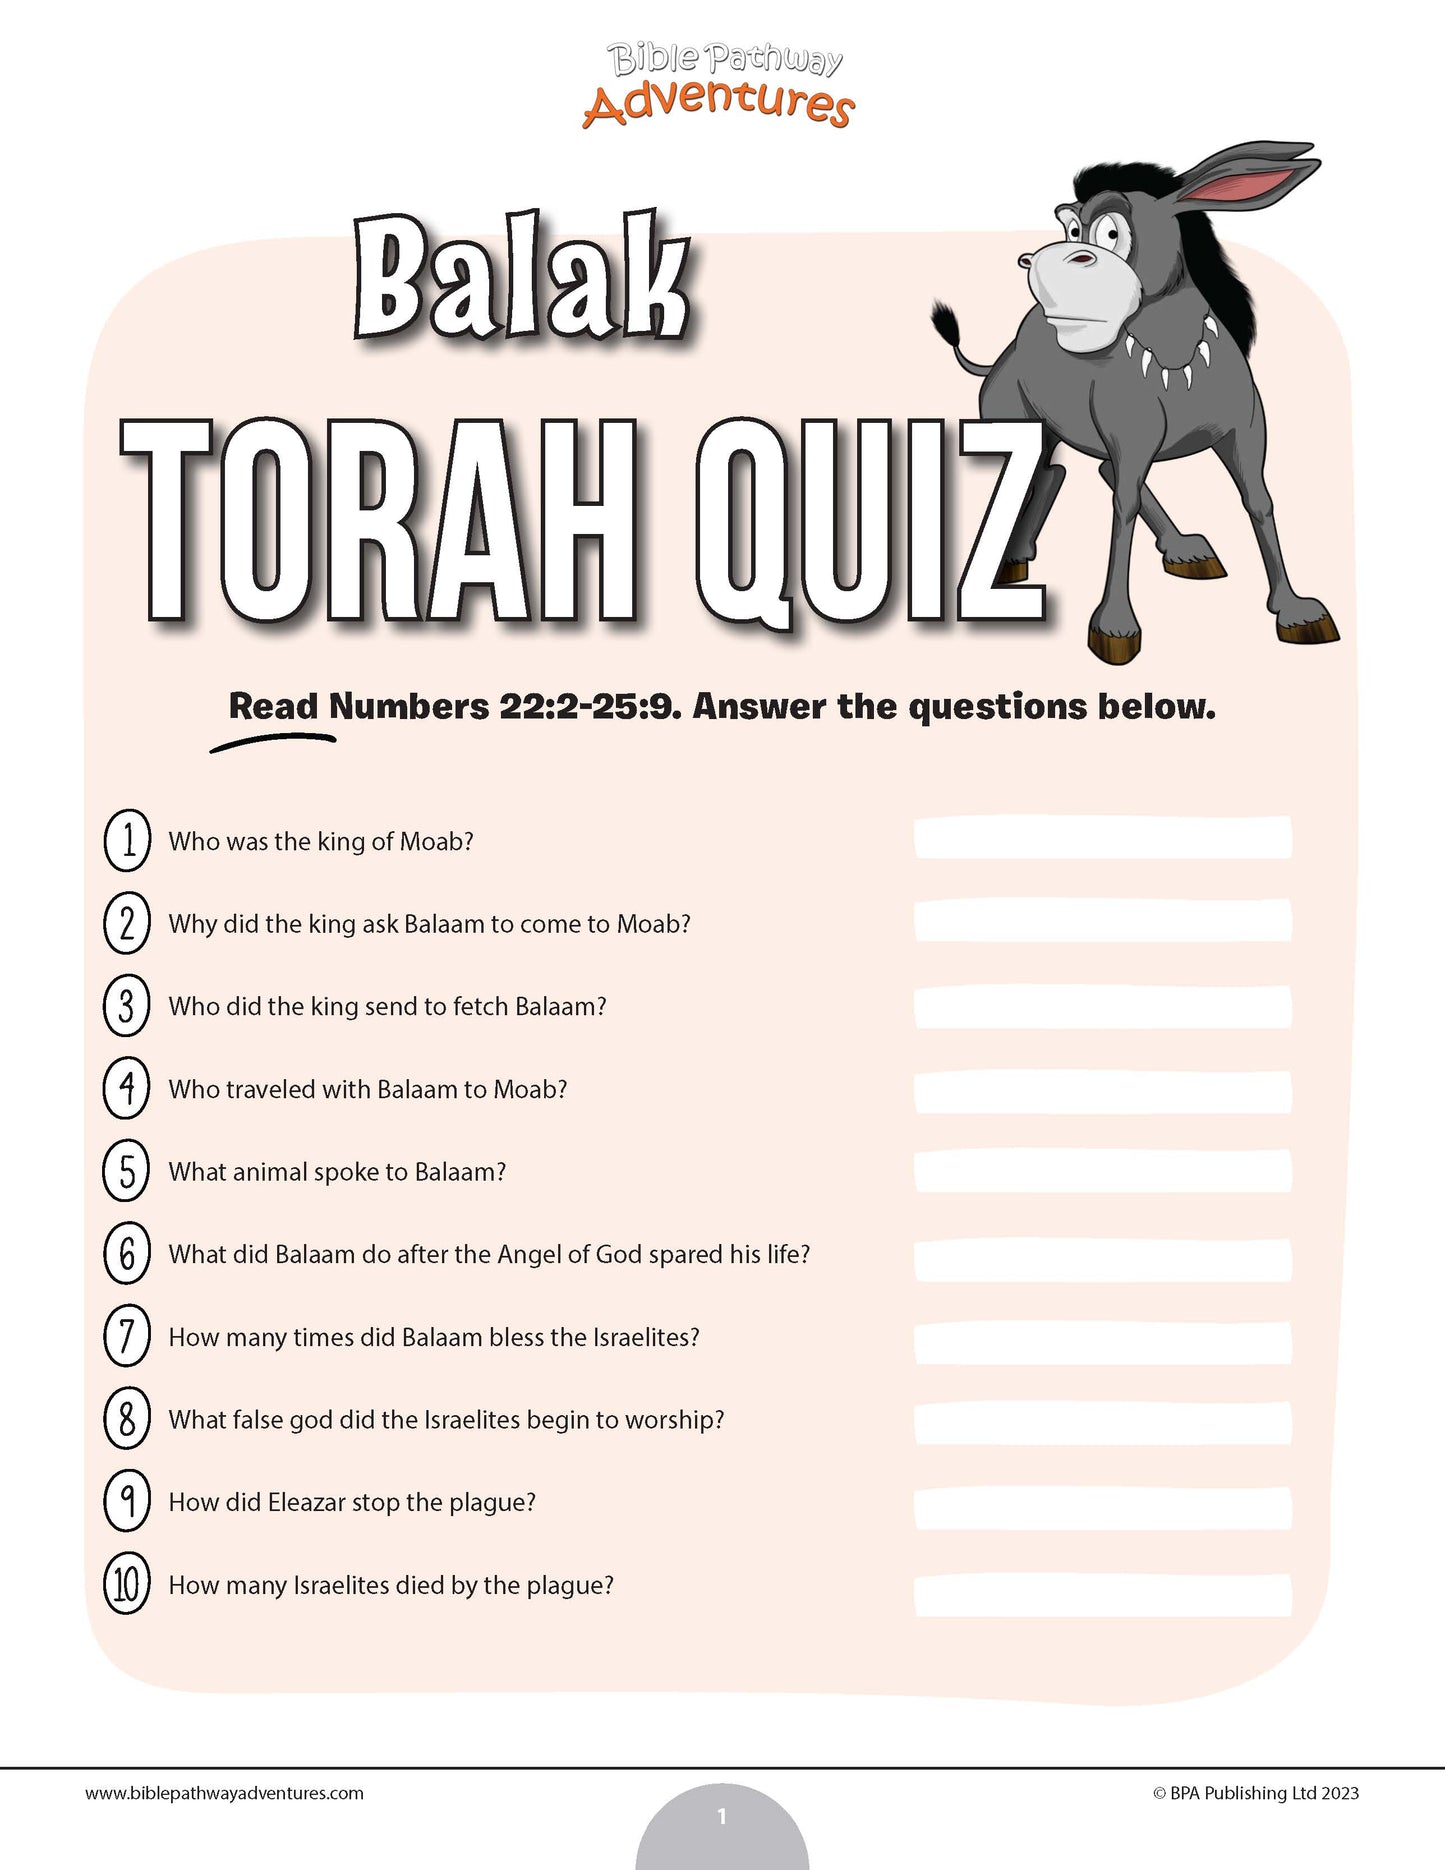 Cuestionario de Balak Torá